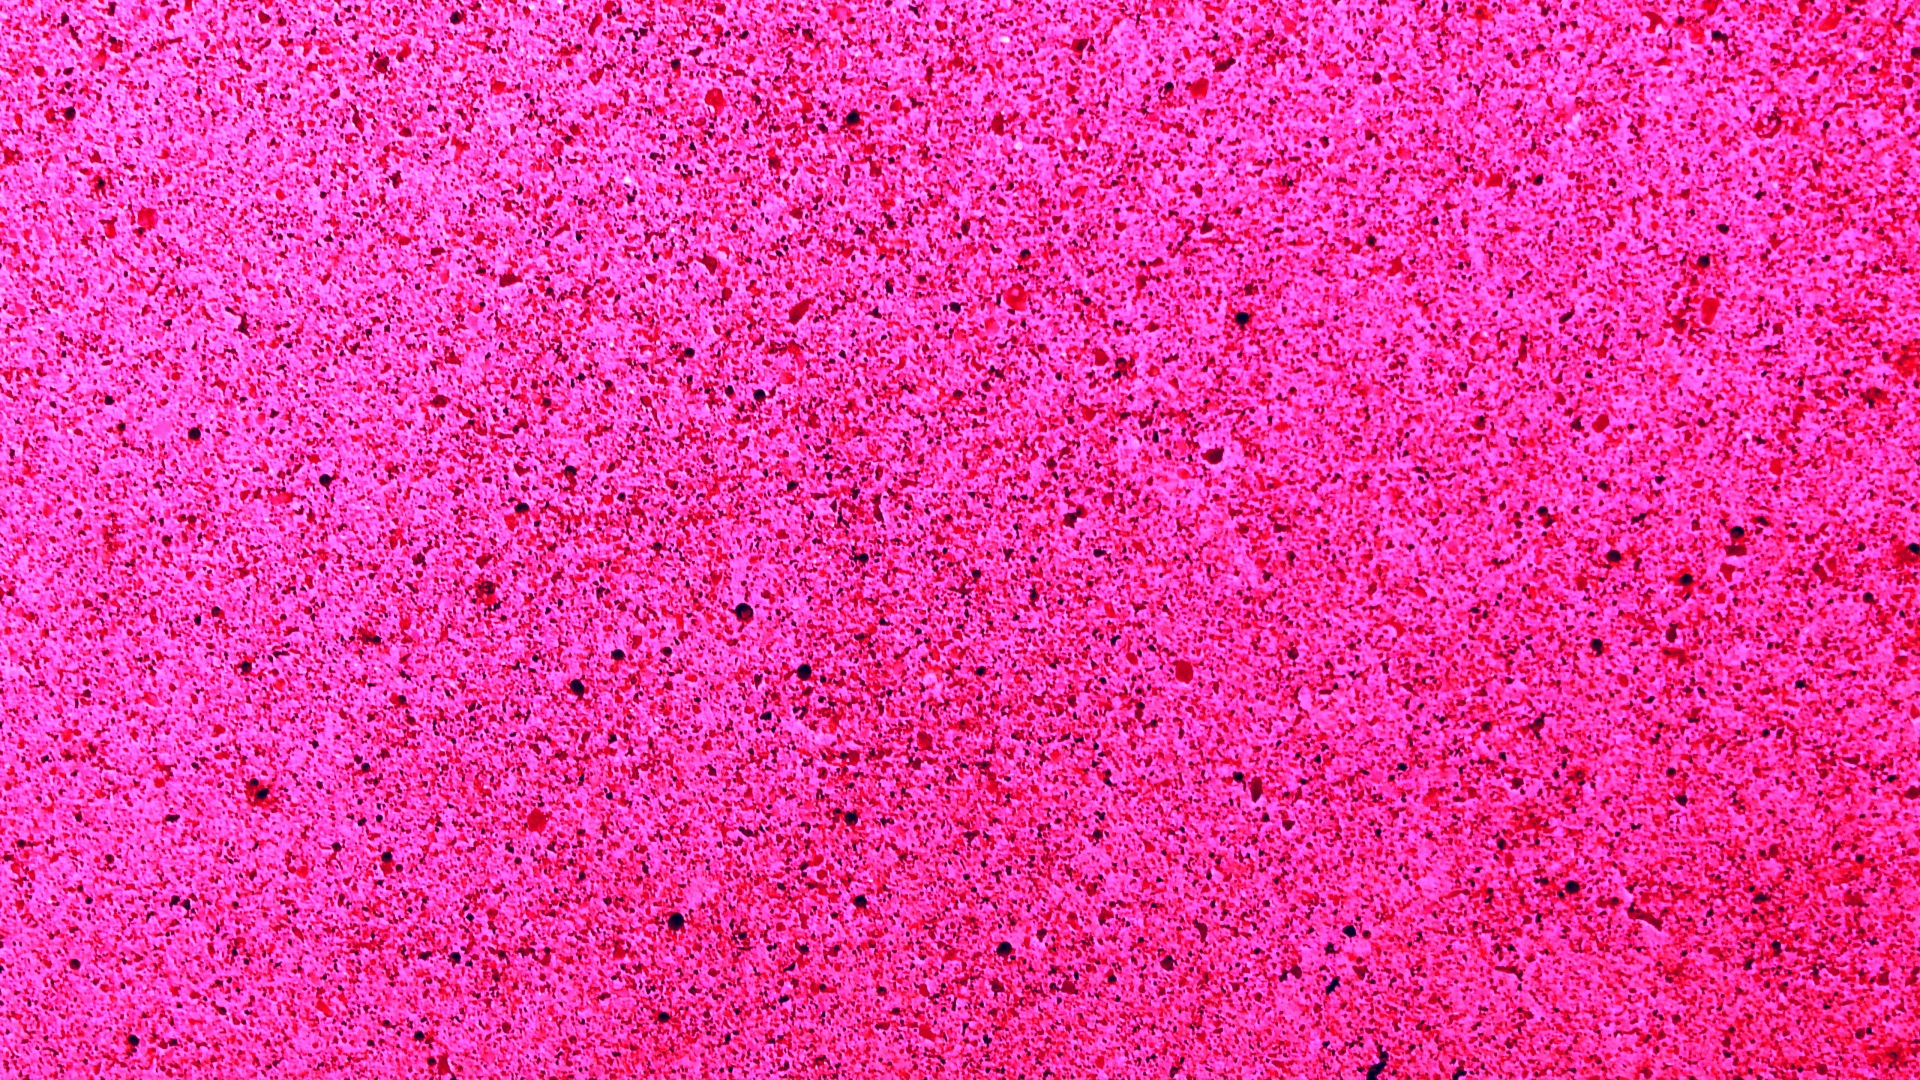 Pink Speckled Background